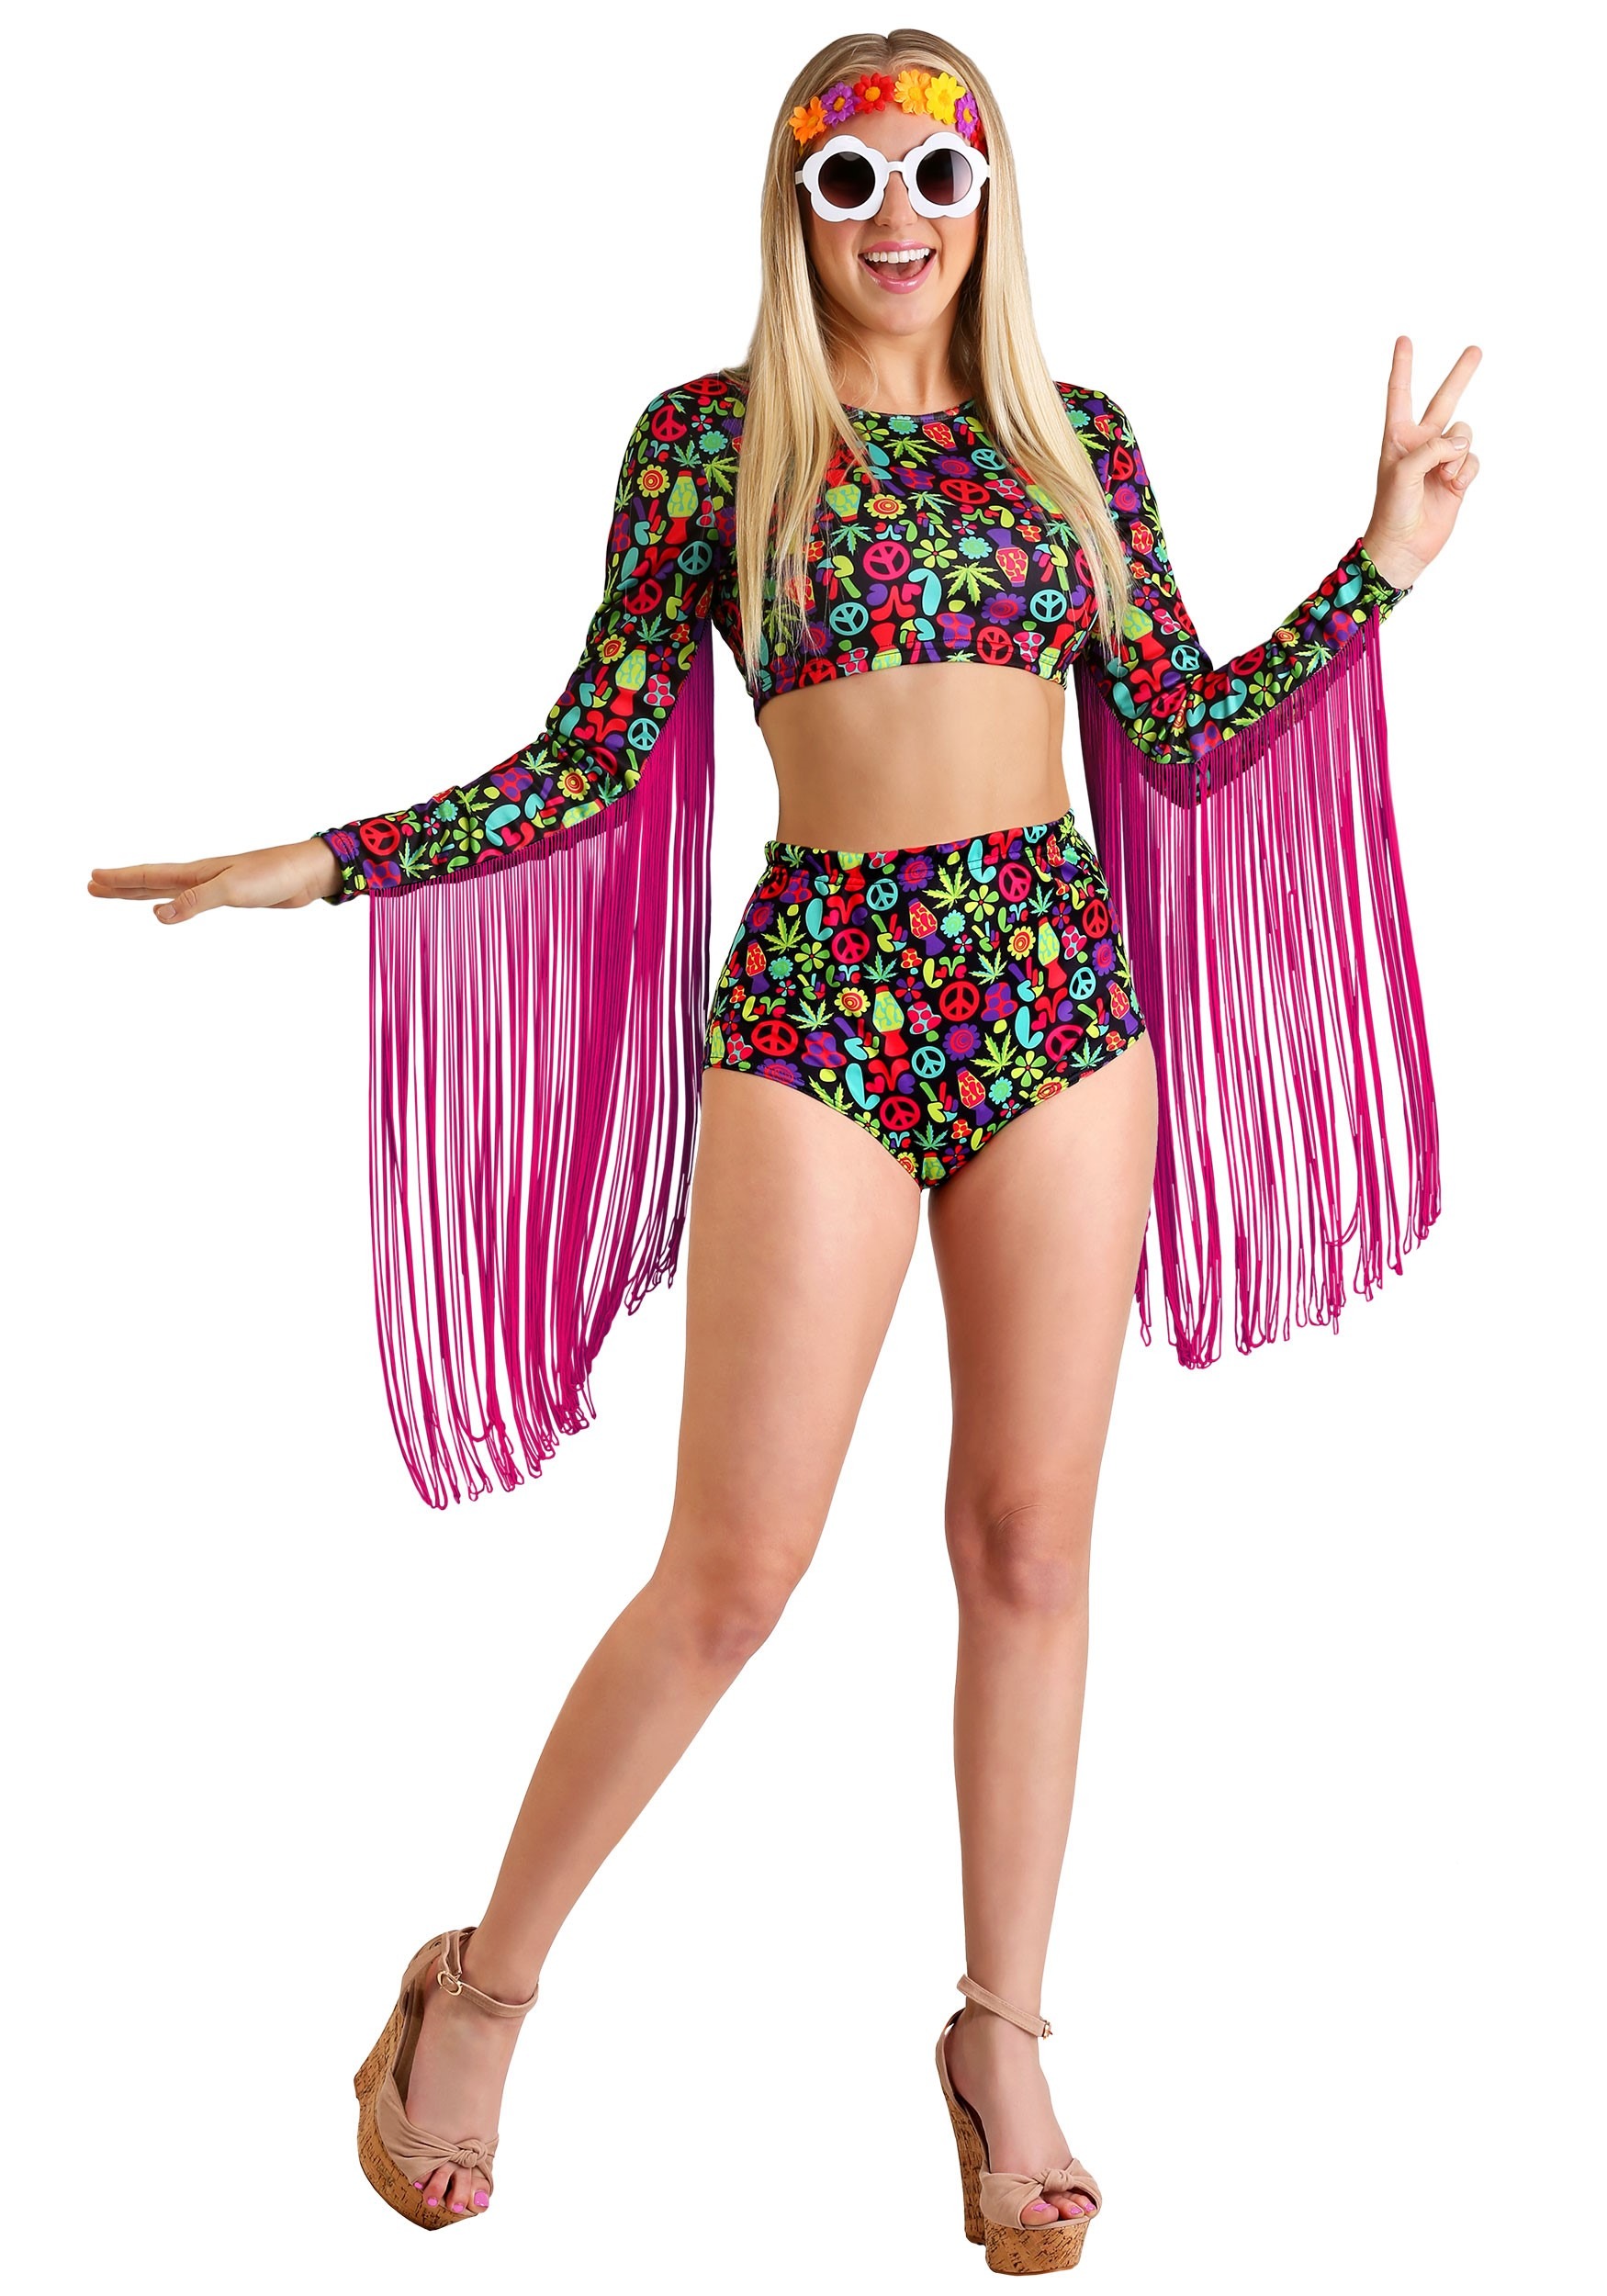 Free Spirit Hippie Women’s Costume